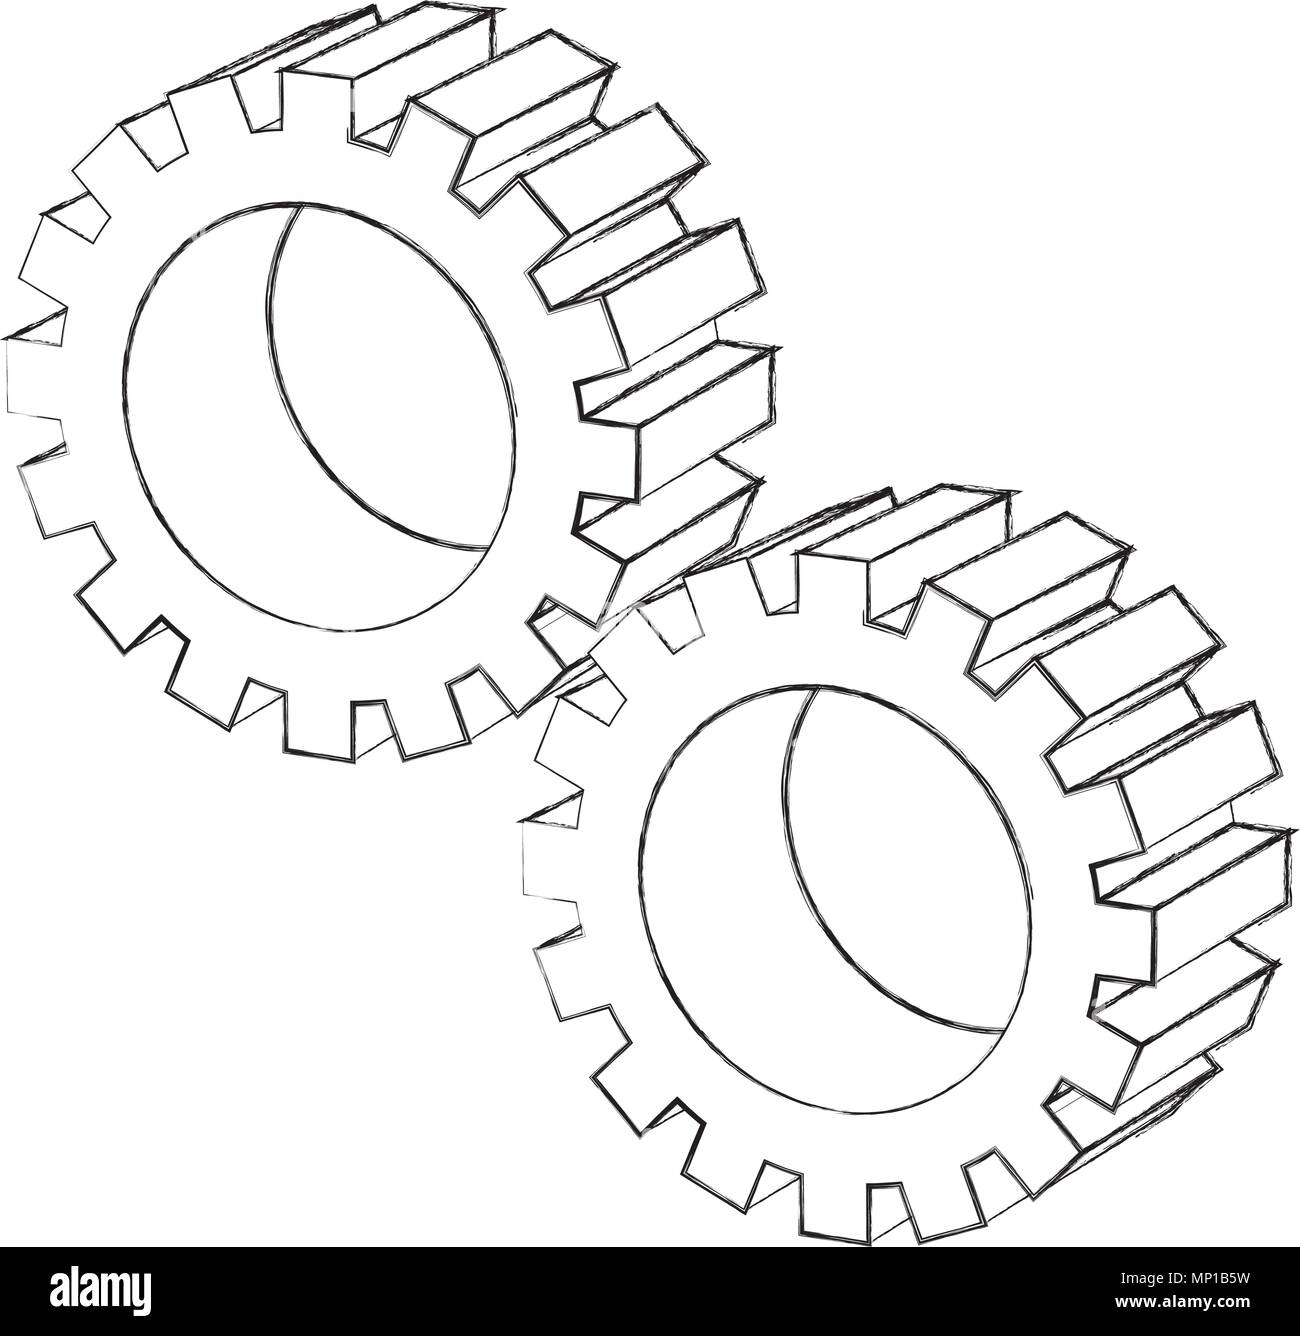 Ingranaggio impostazioni meccanico disegno isometrico Immagine e Vettoriale  - Alamy